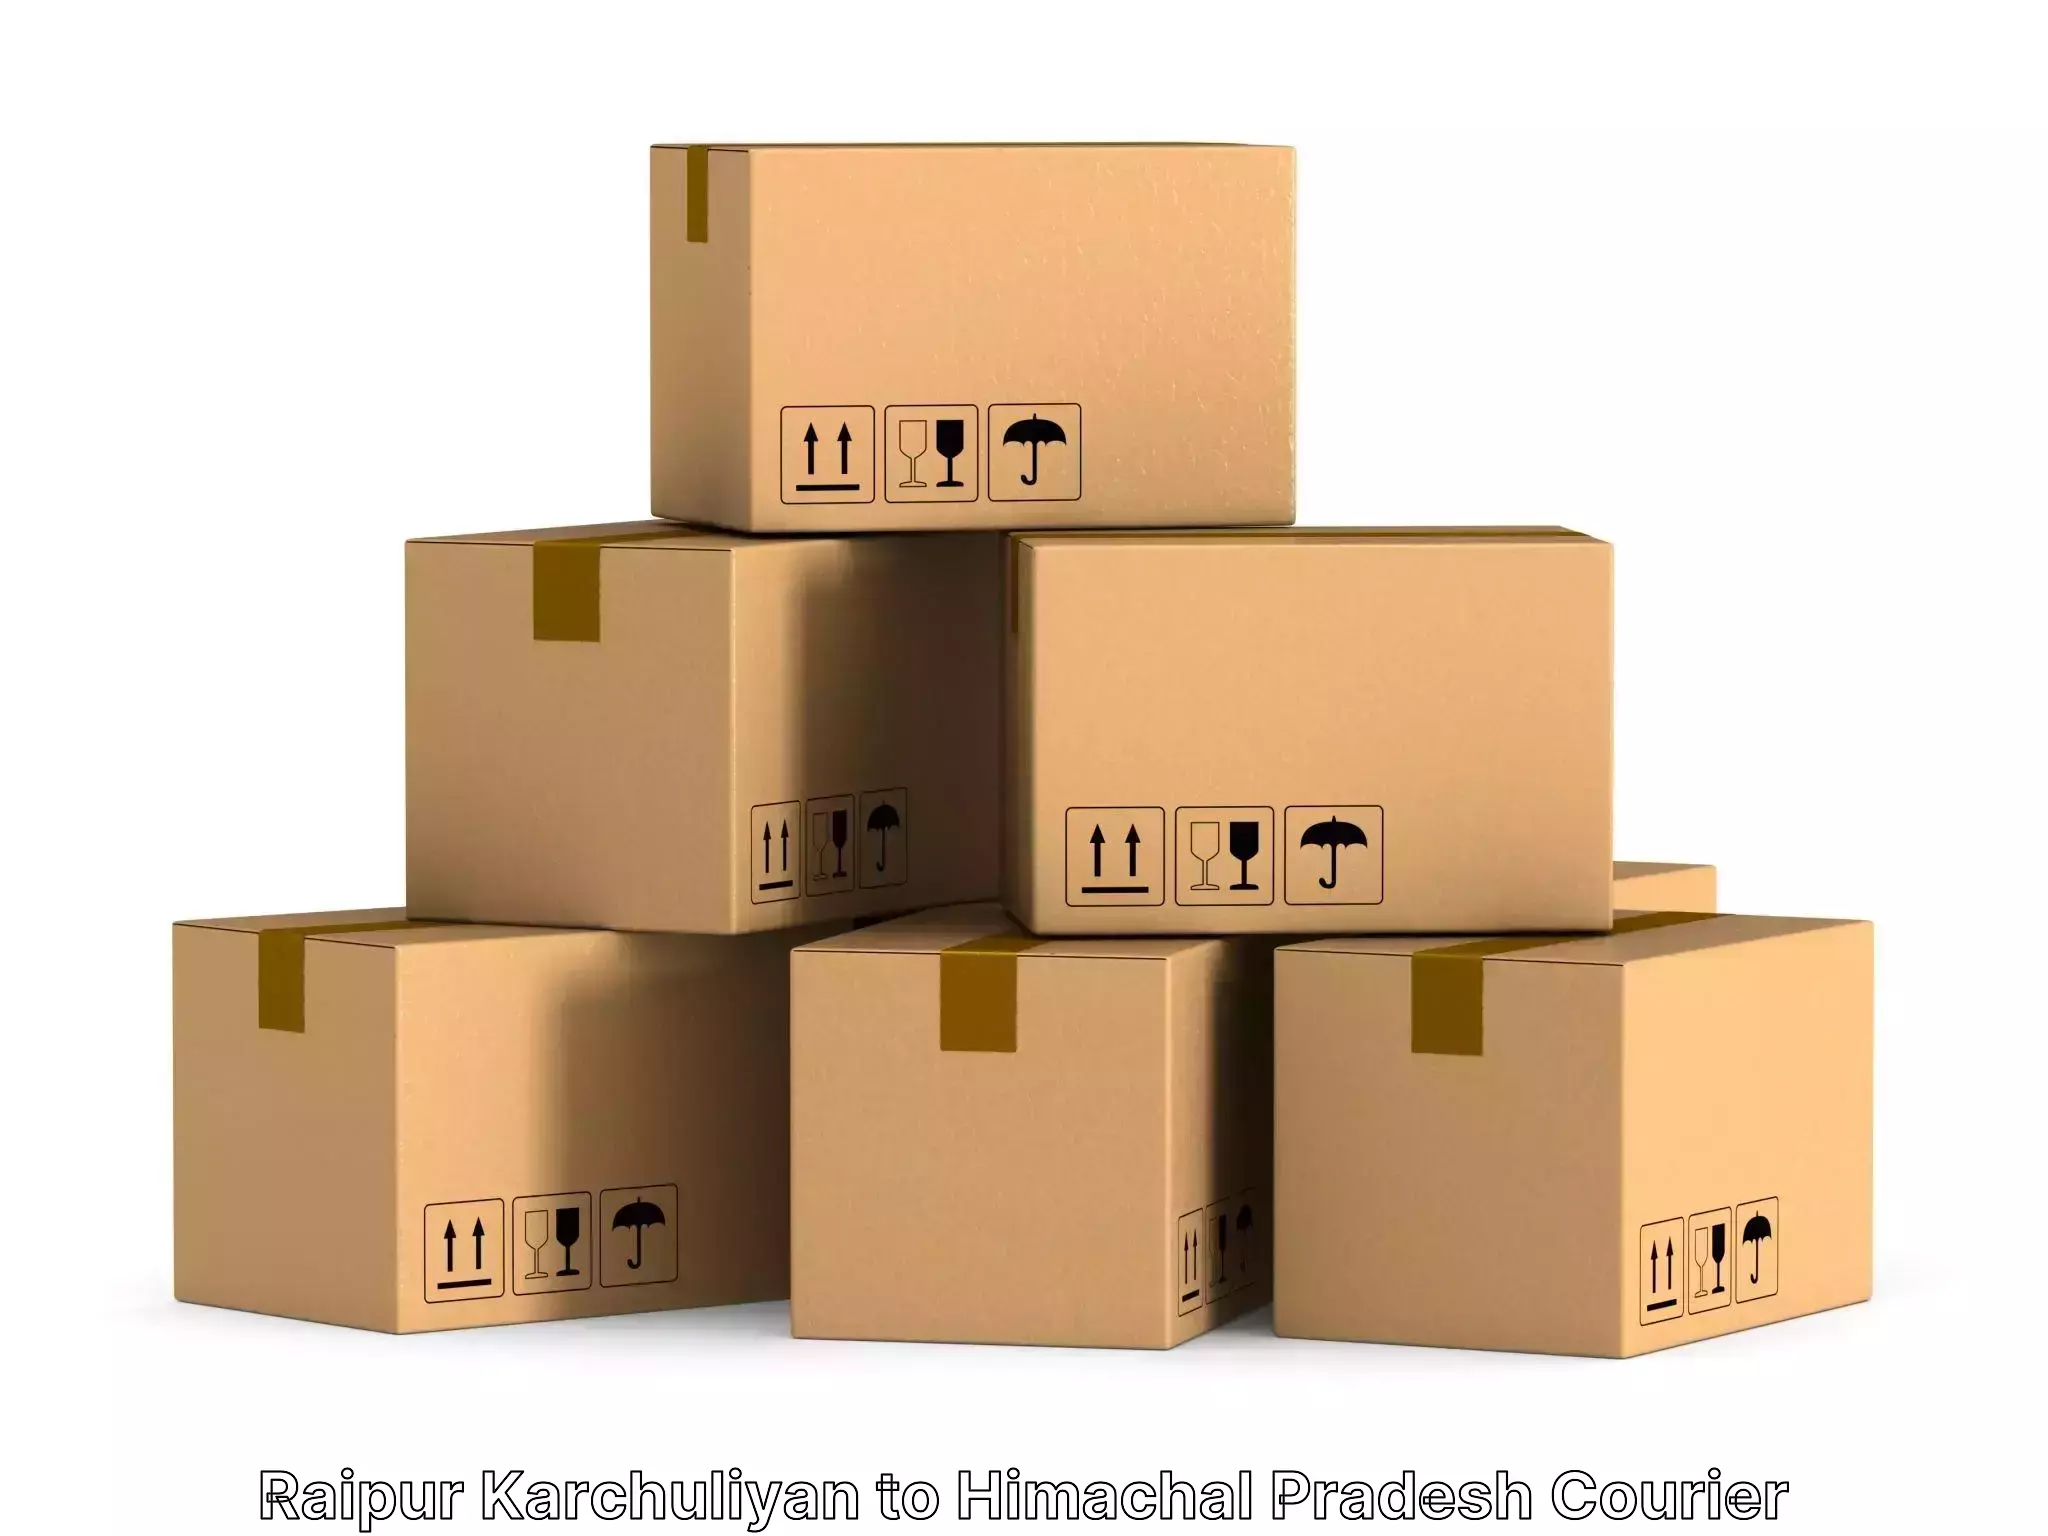 Moving and packing experts Raipur Karchuliyan to Rakkar